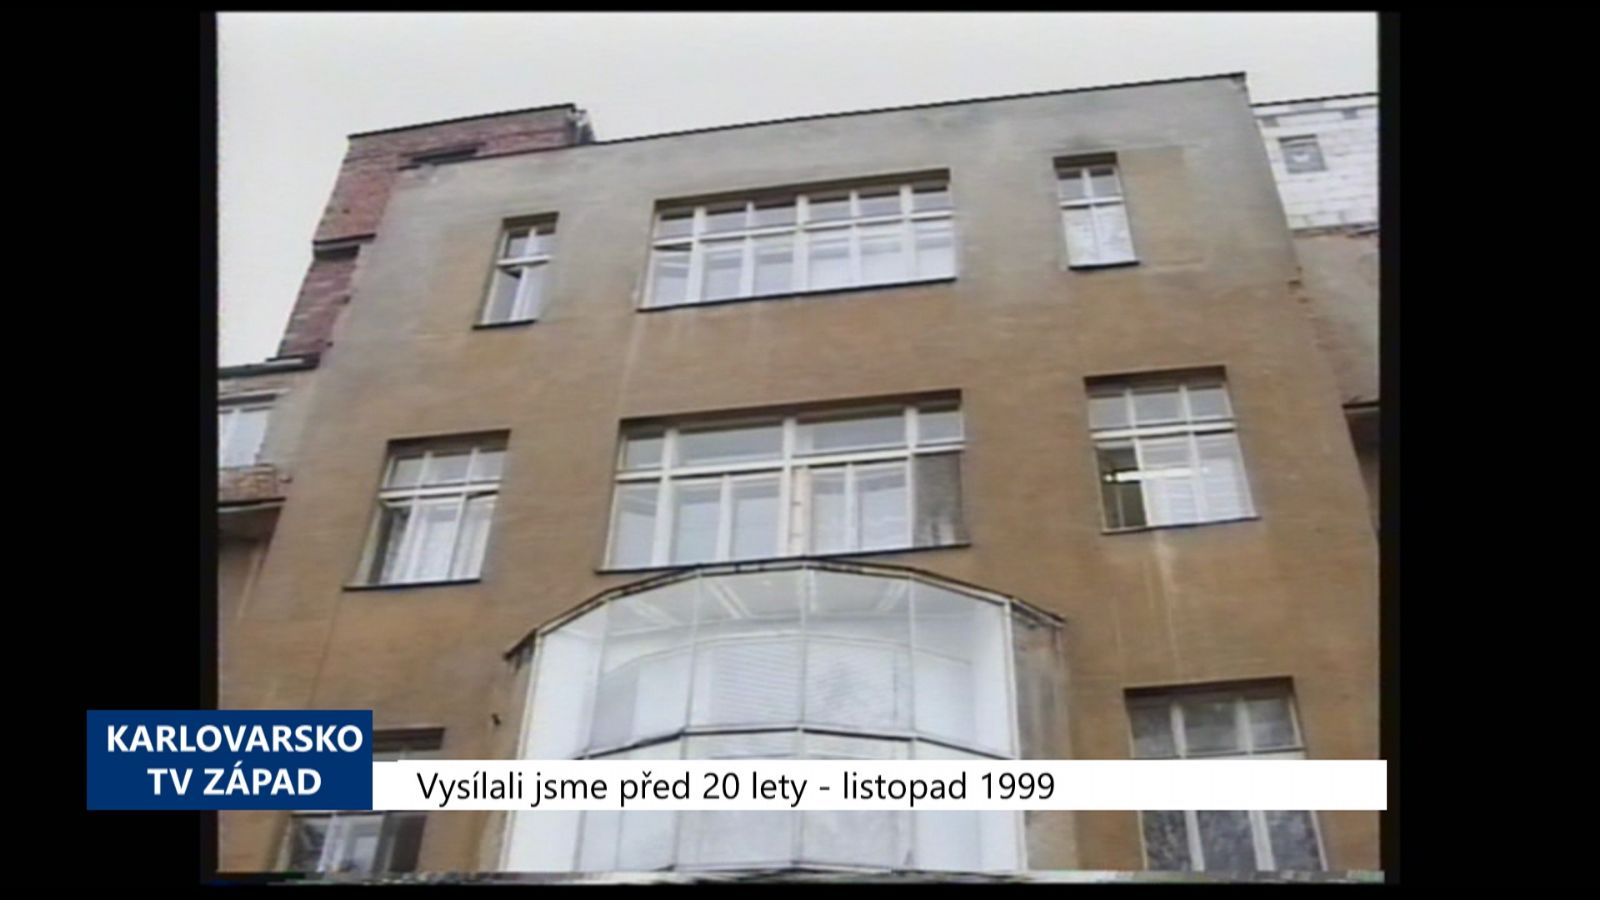 1999 – Cheb: Pracovnice nemocnice zpronevěřila 168 tisíc (TV Západ)